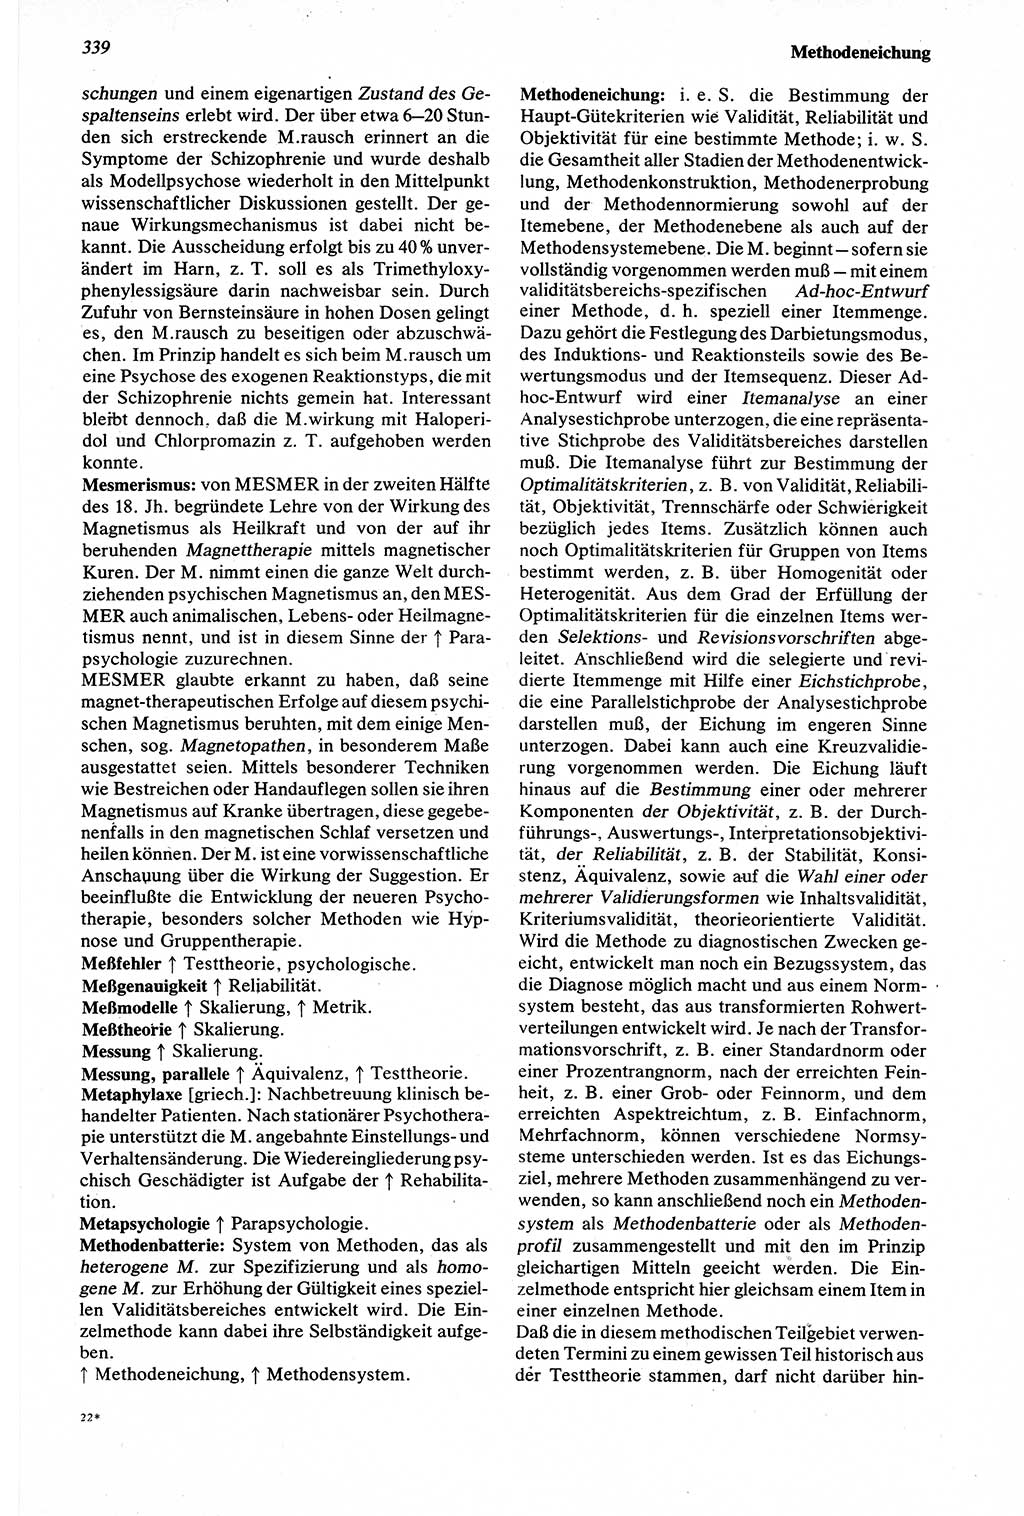 Wörterbuch der Psychologie [Deutsche Demokratische Republik (DDR)] 1976, Seite 339 (Wb. Psych. DDR 1976, S. 339)